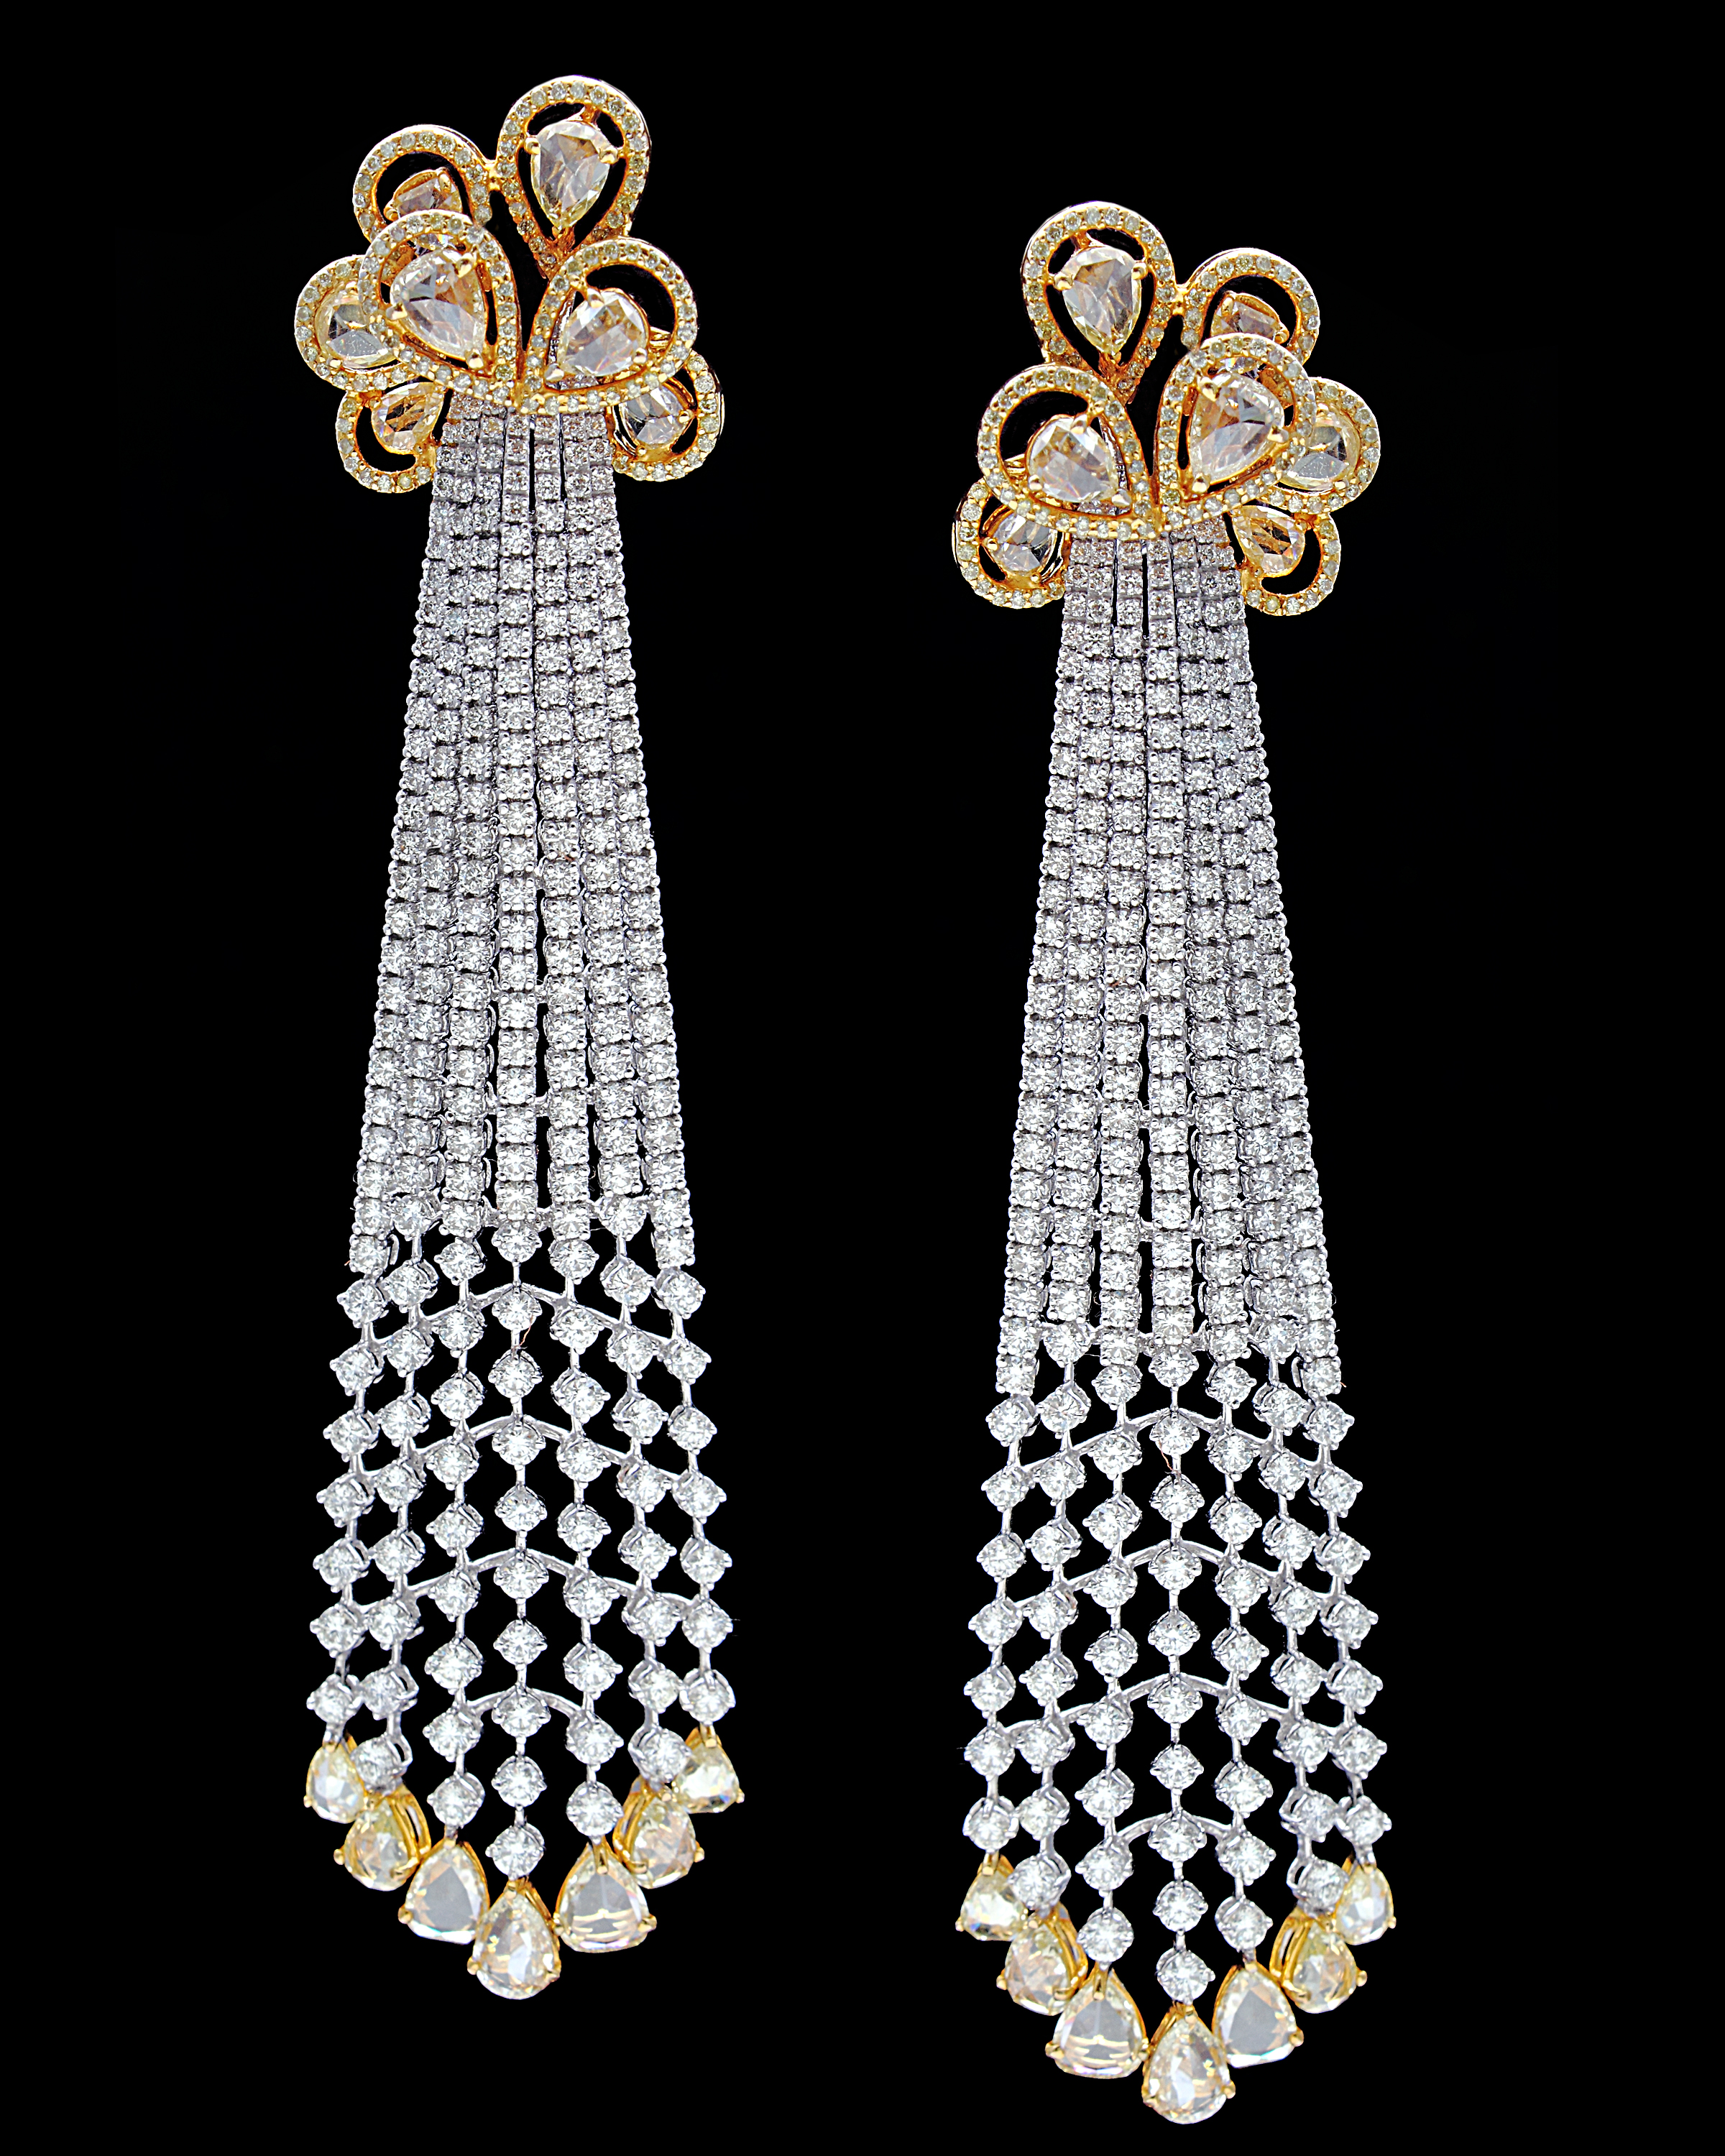 Jewellers choice design awards Mumbai India, Indian jewellery design